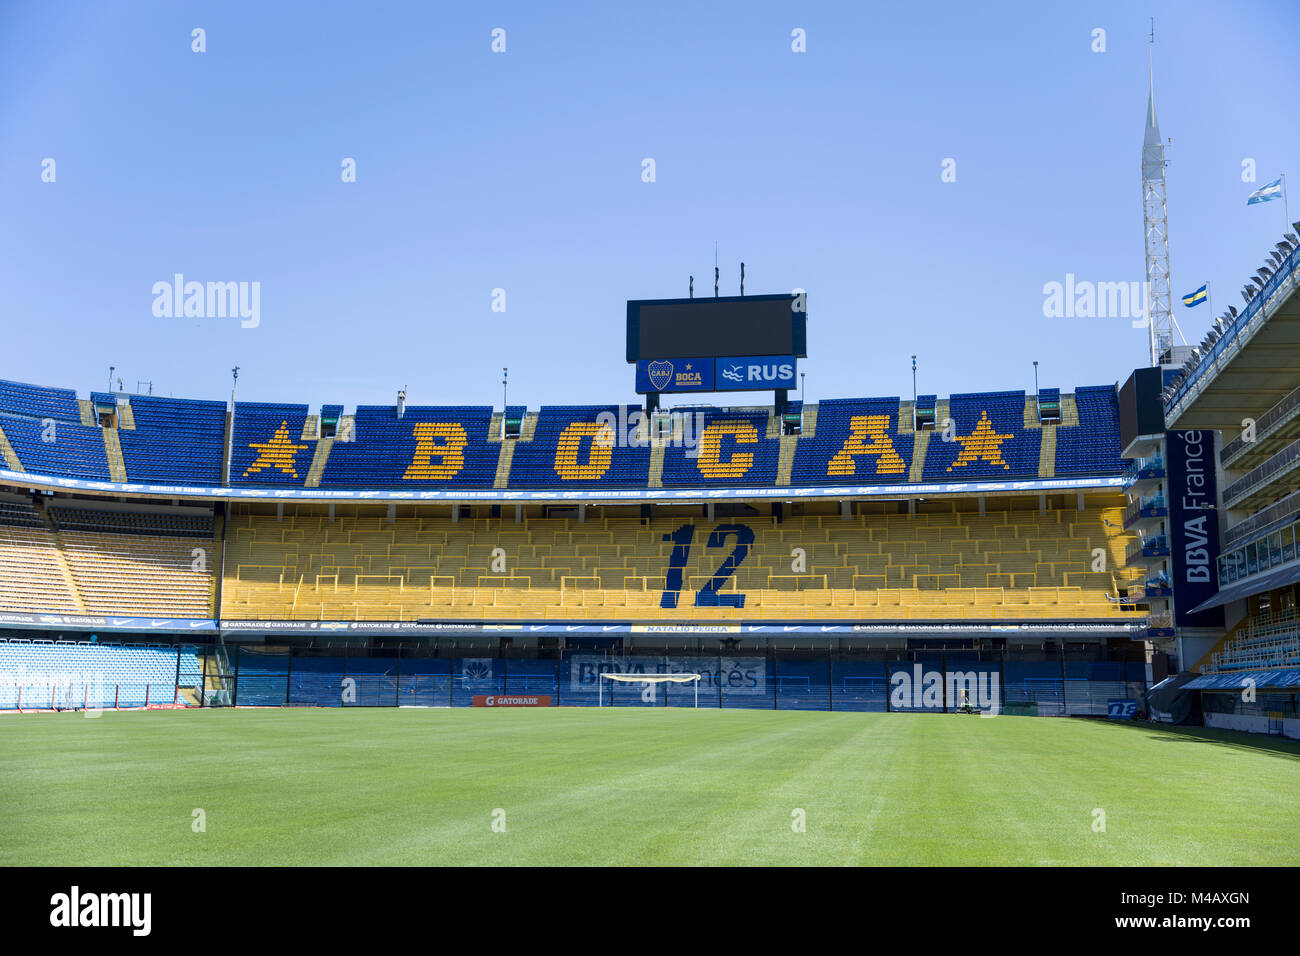 Dettaglio da La bombonera stadium di Buenos Aires, Argentina. Foto Stock